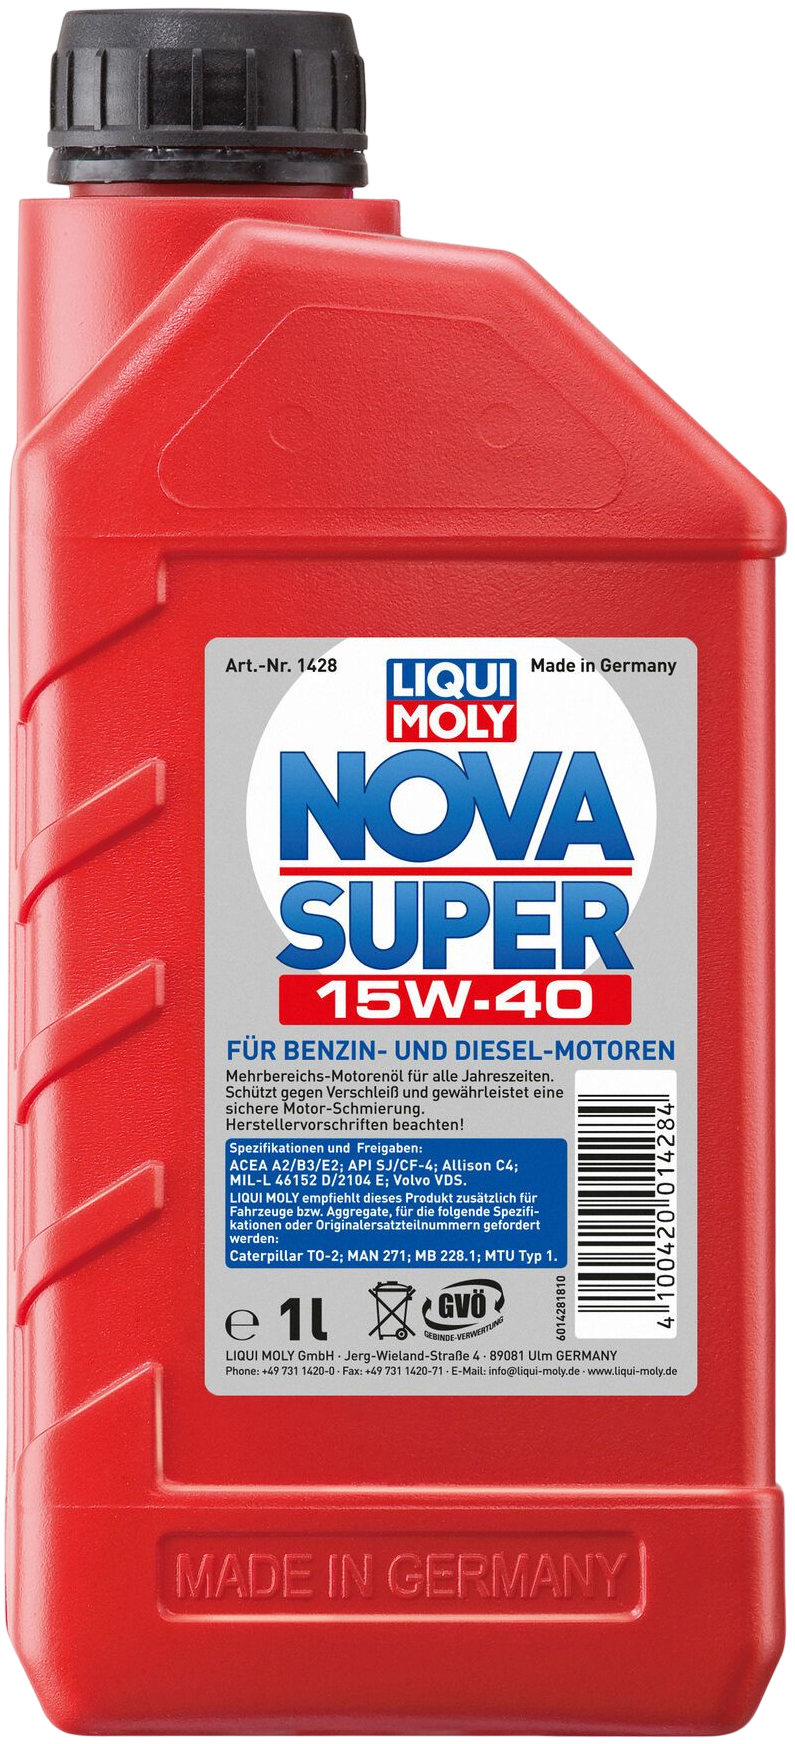 Liqui Moly Nova Super 15W-40, 6 x 1 lt detail 2